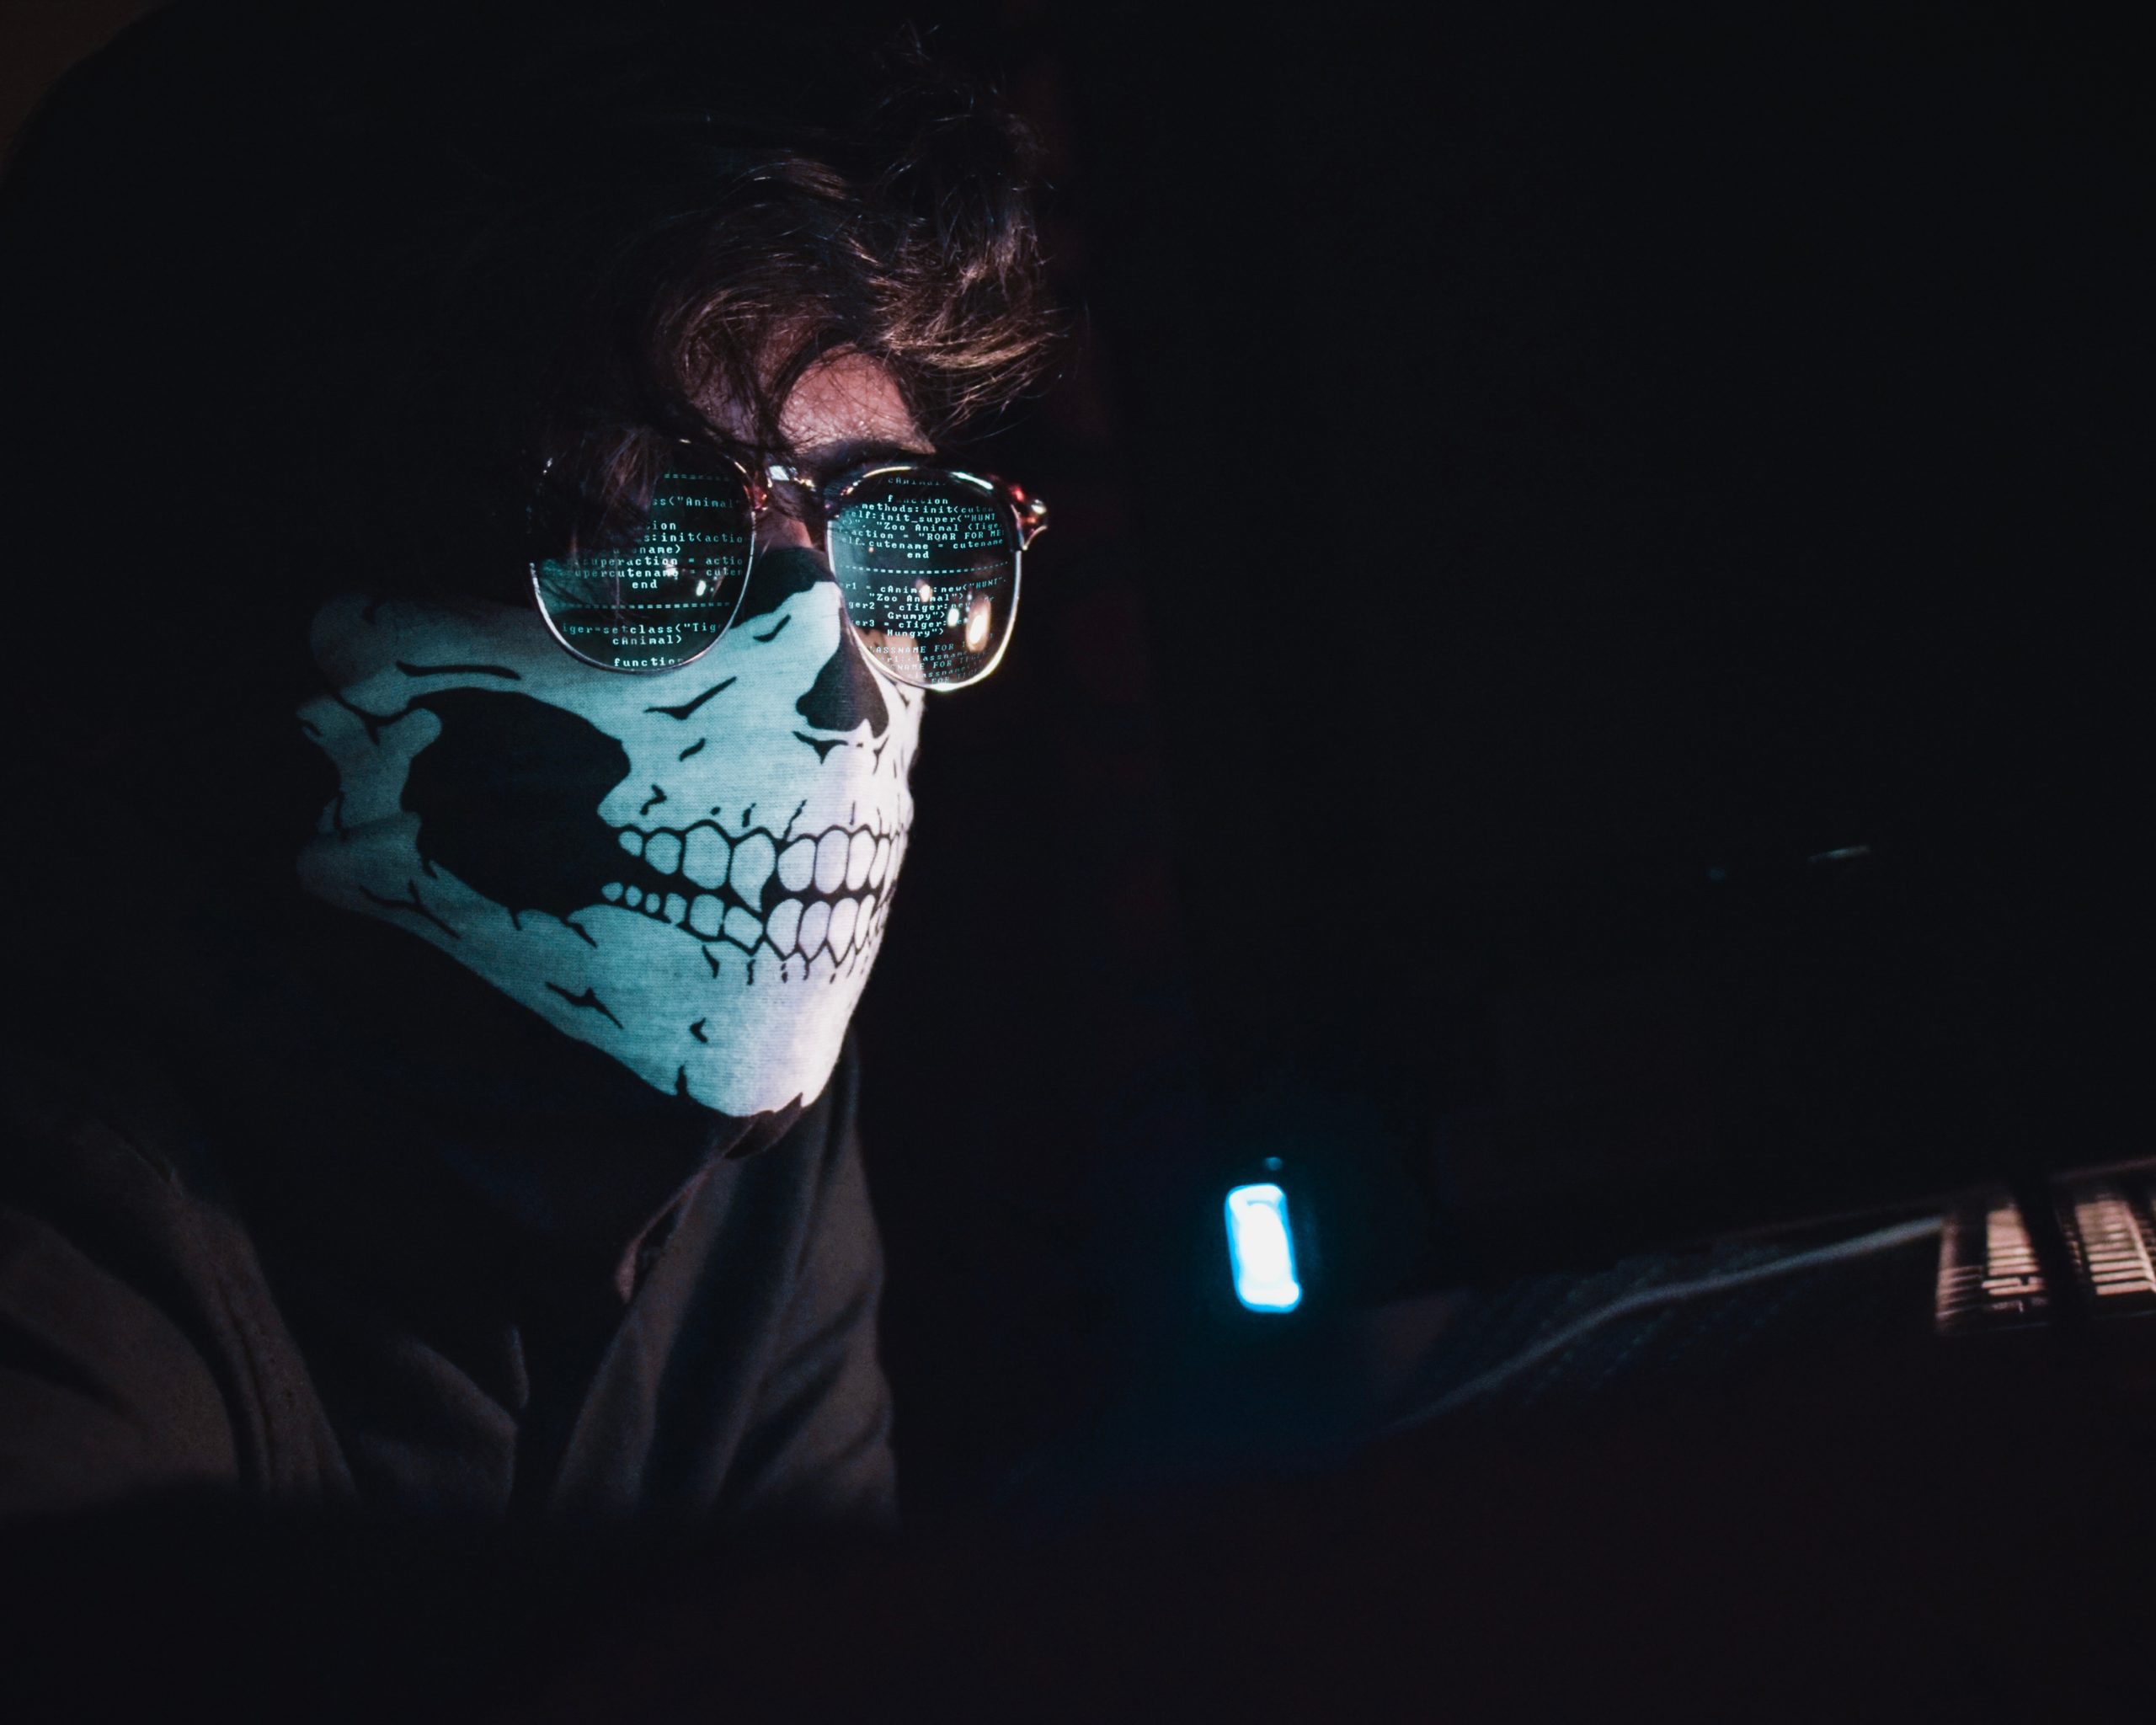 Mann mit einer Maske und Sonnebrille sitzt im dunklen Raum und kodiert